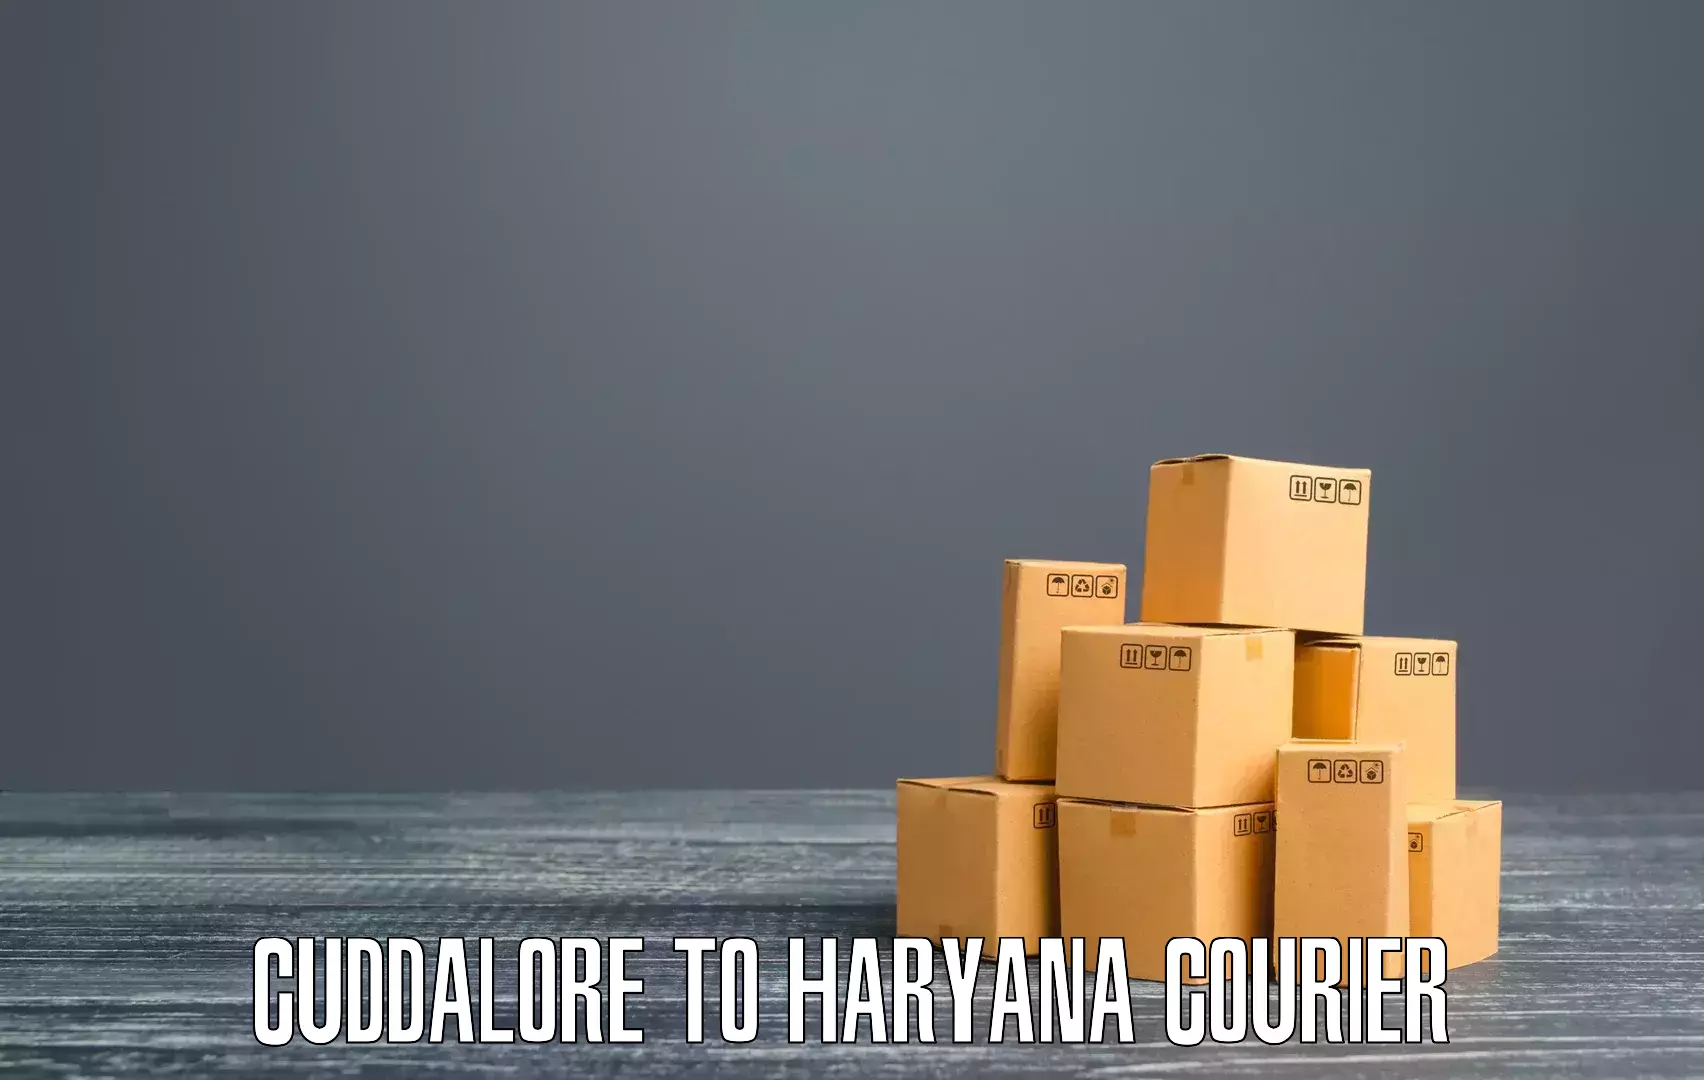 Cargo delivery service Cuddalore to Barwala